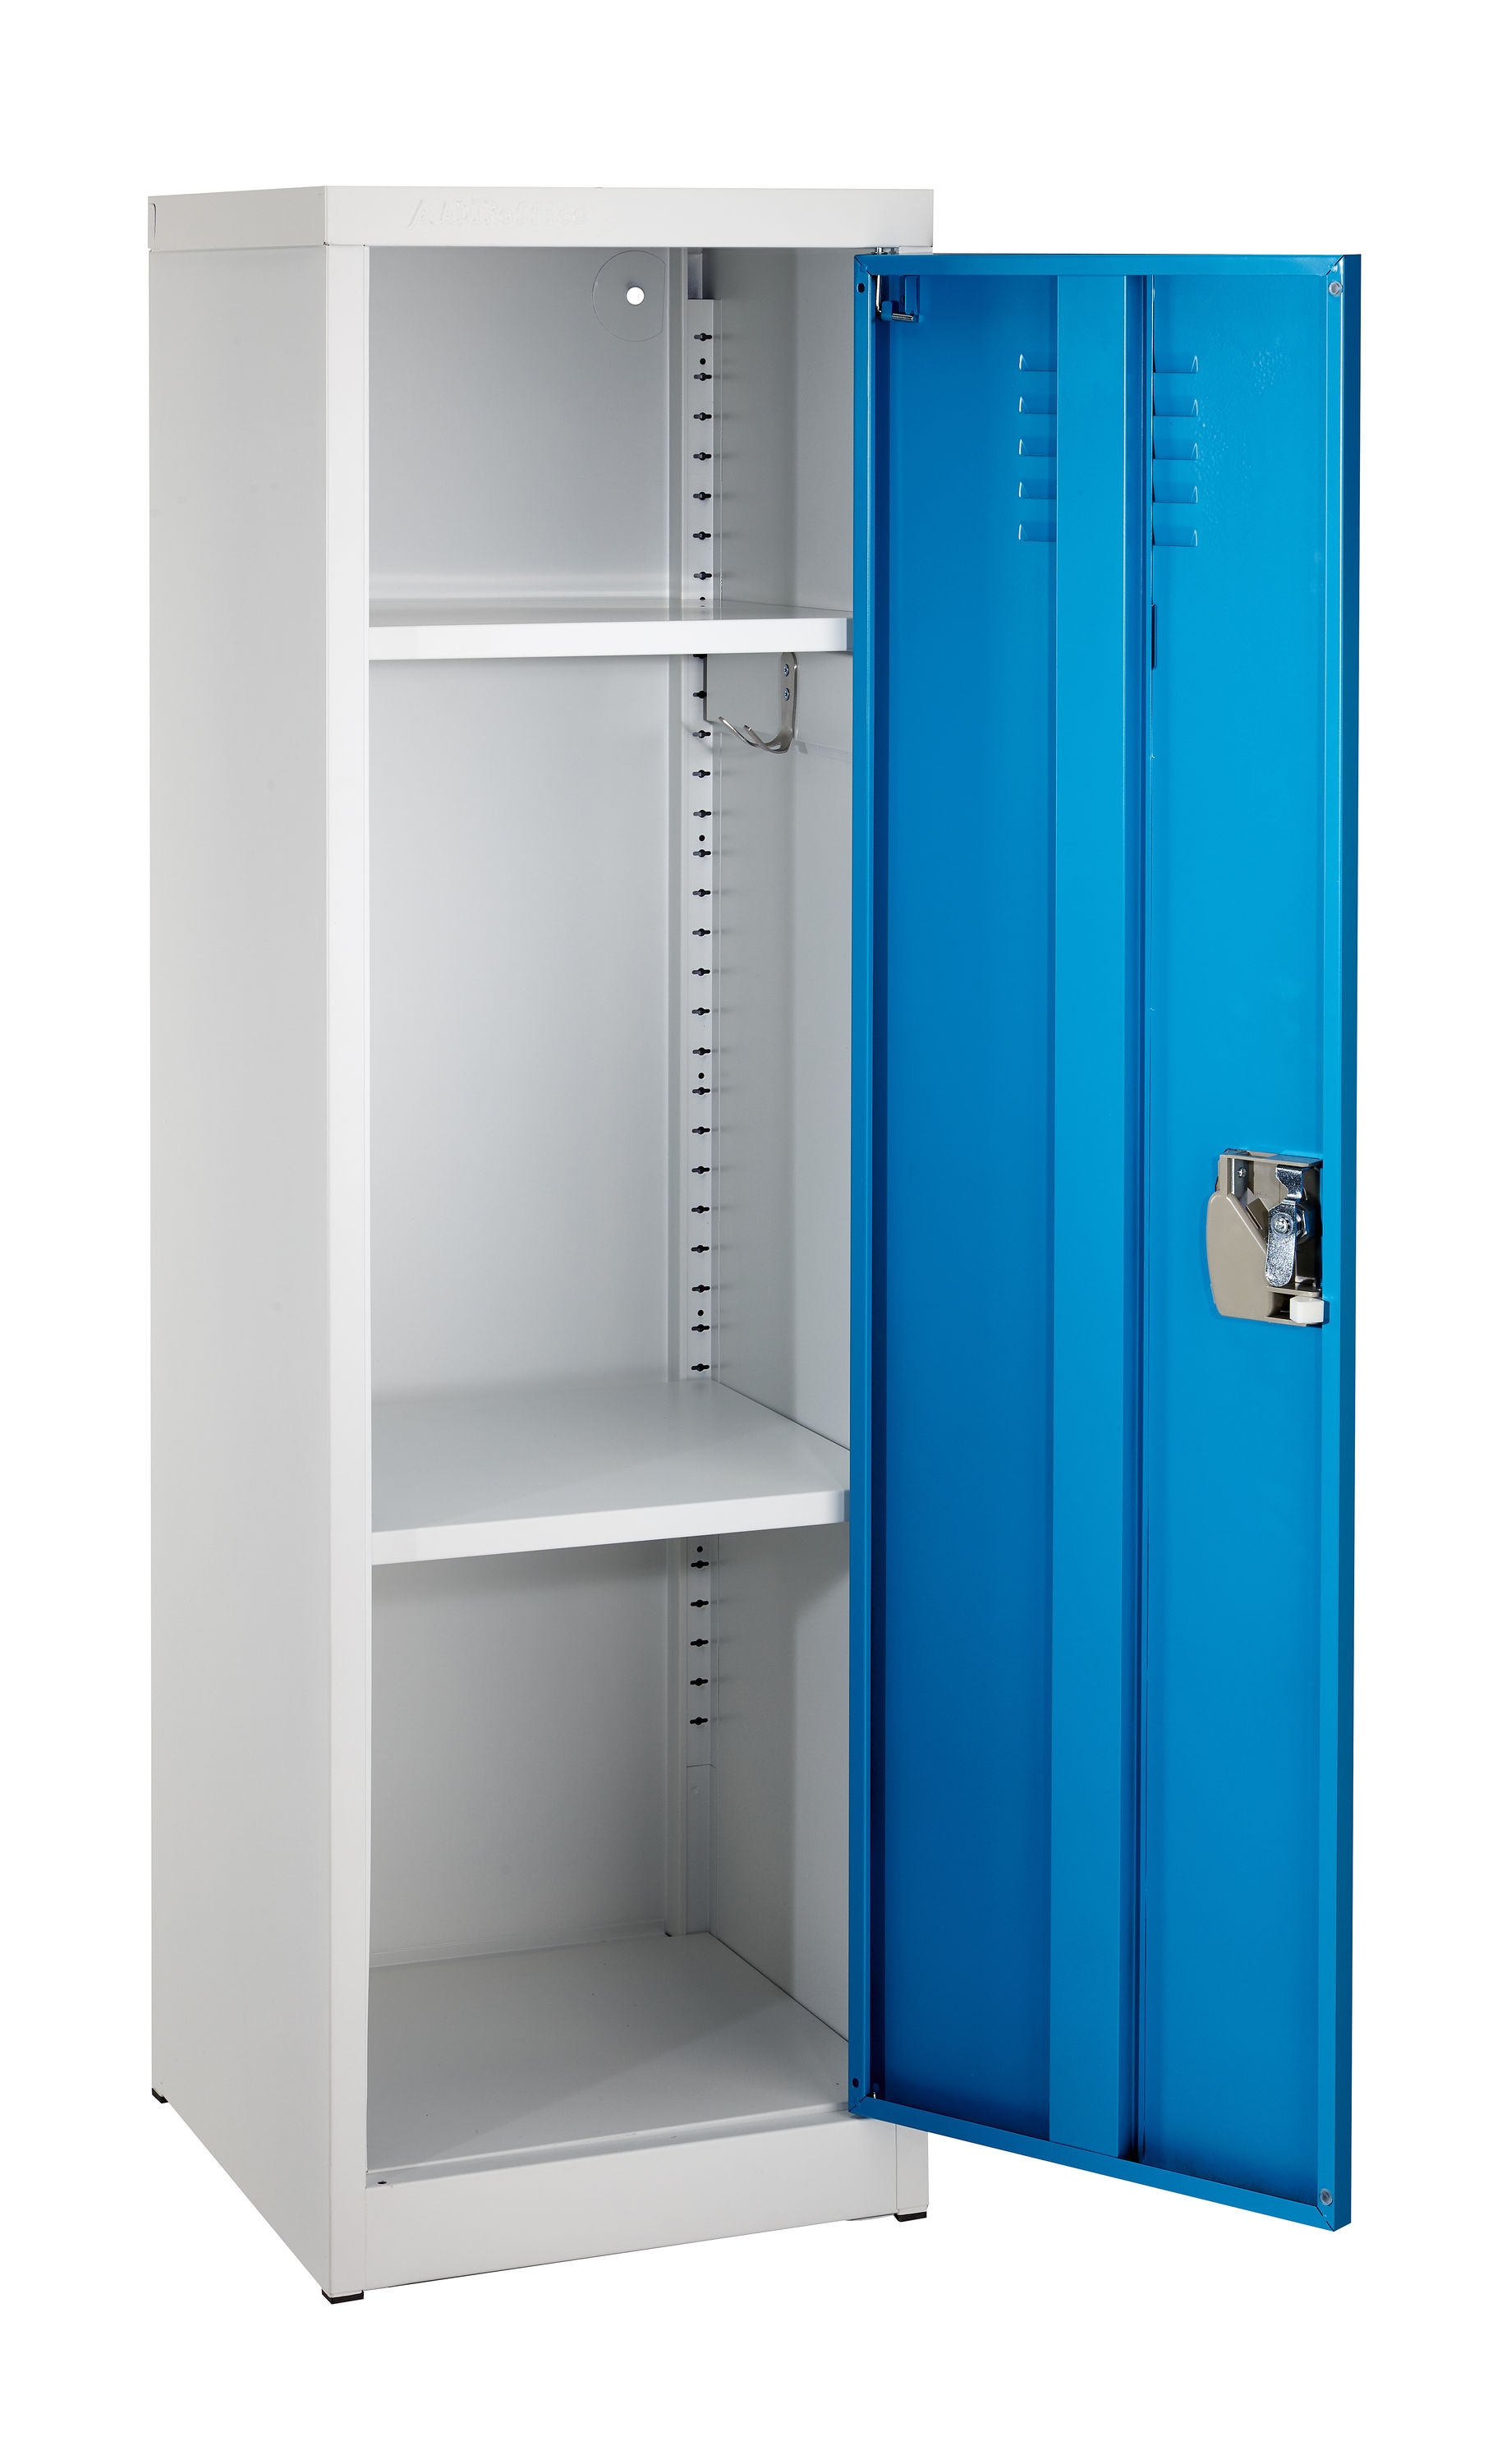 W x W Steel Single D 15-in AdirOffice H at Locker Steel x Tier 12-in Lockers 12-in 48-in 48-in Full Blue x in Storage H